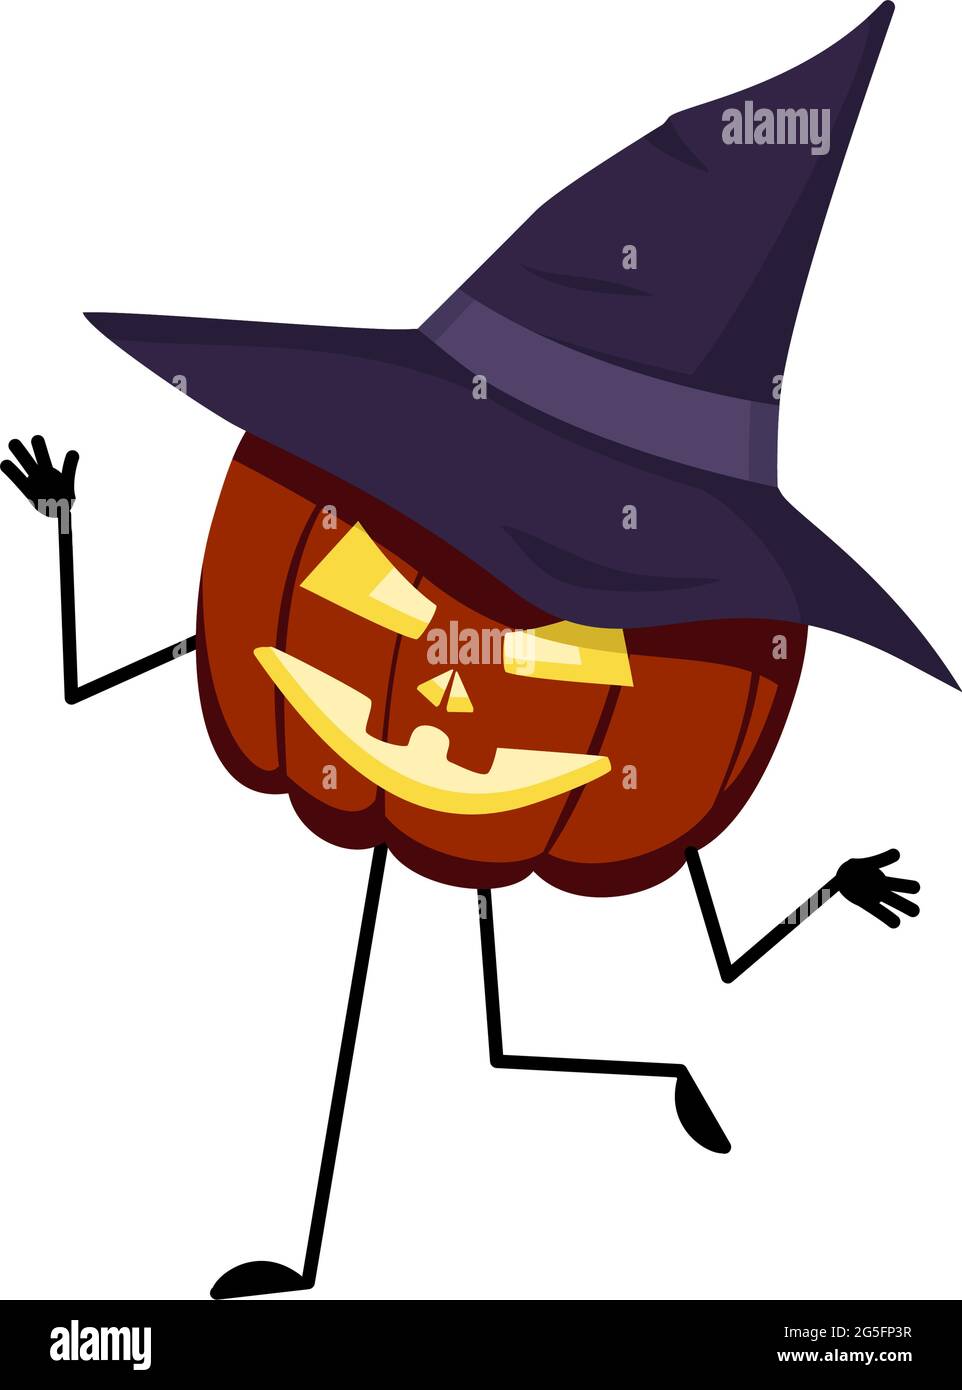 Niedlicher Kürbis-Charakter in spitzem Hut mit tanzenden Emotionen,  lächelnd Gesicht, Arme und Beine Stock-Vektorgrafik - Alamy